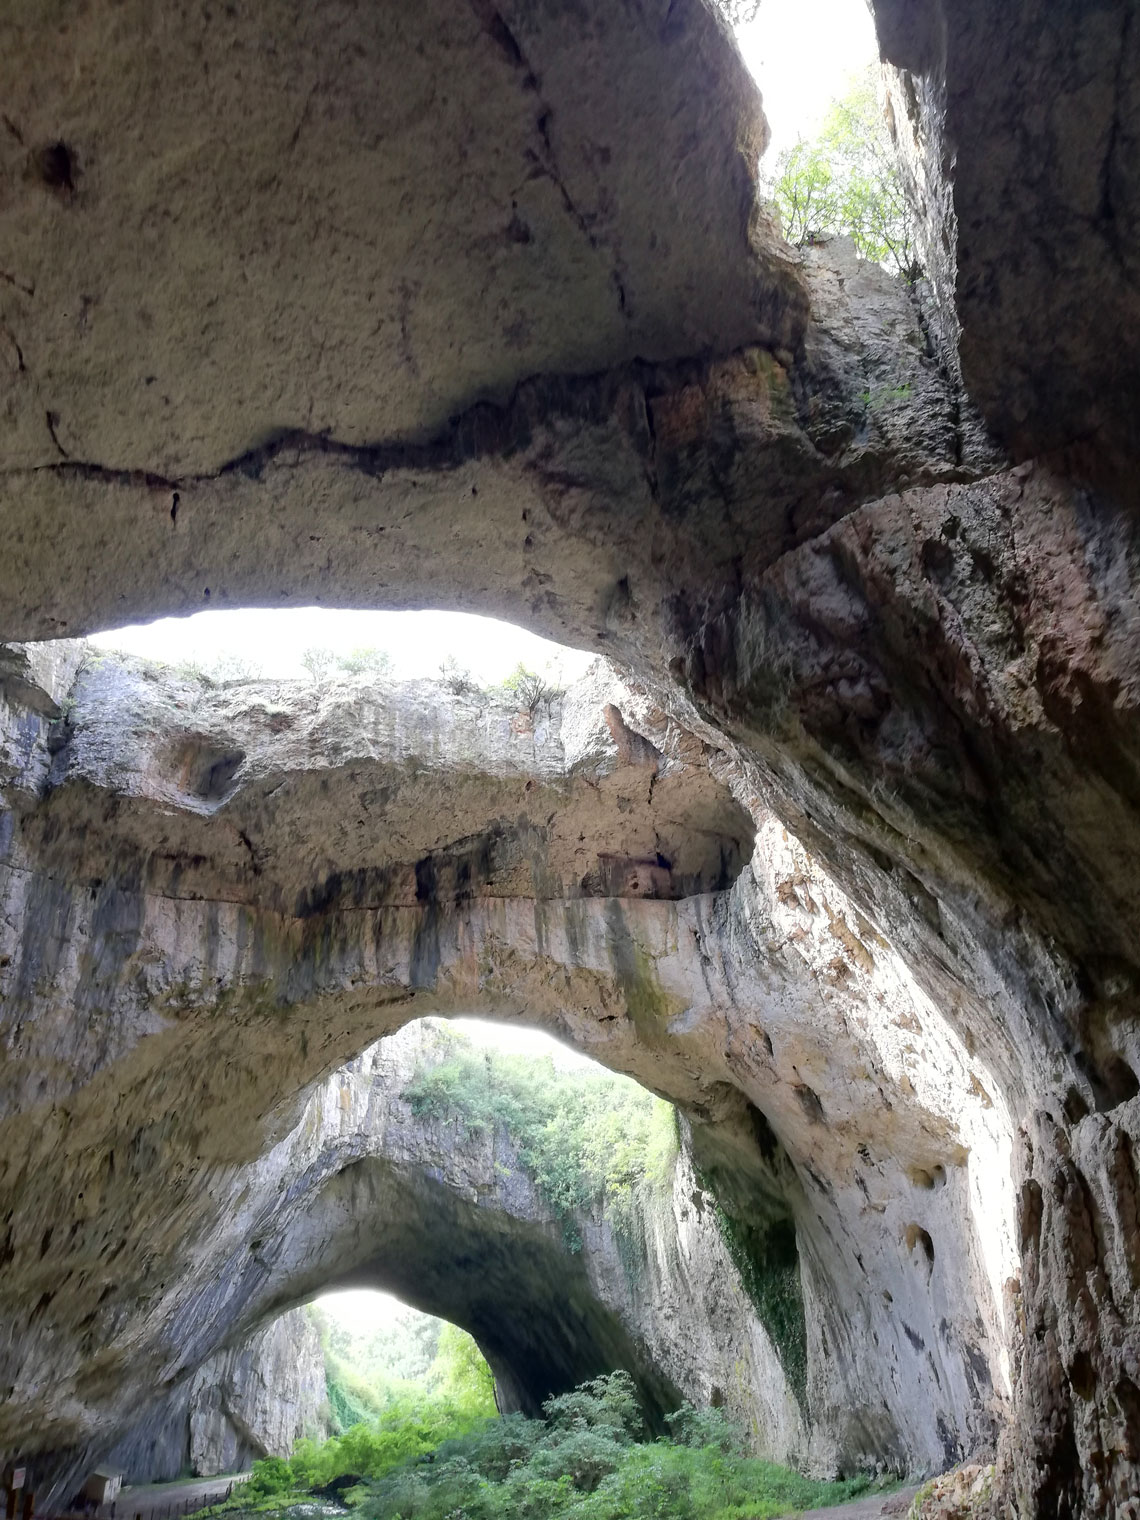 Die Devetashka-Höhle liegt etwa 2 km vom Dorf Devetaki entfernt. Ein schmaler Pfad am Fluss führt vom Dorf direkt zur Höhle. Es kann auch über die Straße 301 erreicht werden, dann über einen 400 Meter langen Feldweg und eine Betonbrücke. Ausgrabungen, die hier in den 1950er Jahren begannen, zeigten eine fast kontinuierliche menschliche Besiedlung dieses Gebiets seit dem Spätpaläolithikum. Die frühesten Spuren menschlicher Präsenz stammen aus dem Mittelpaläolithikum vor etwa 70.000 Jahren.